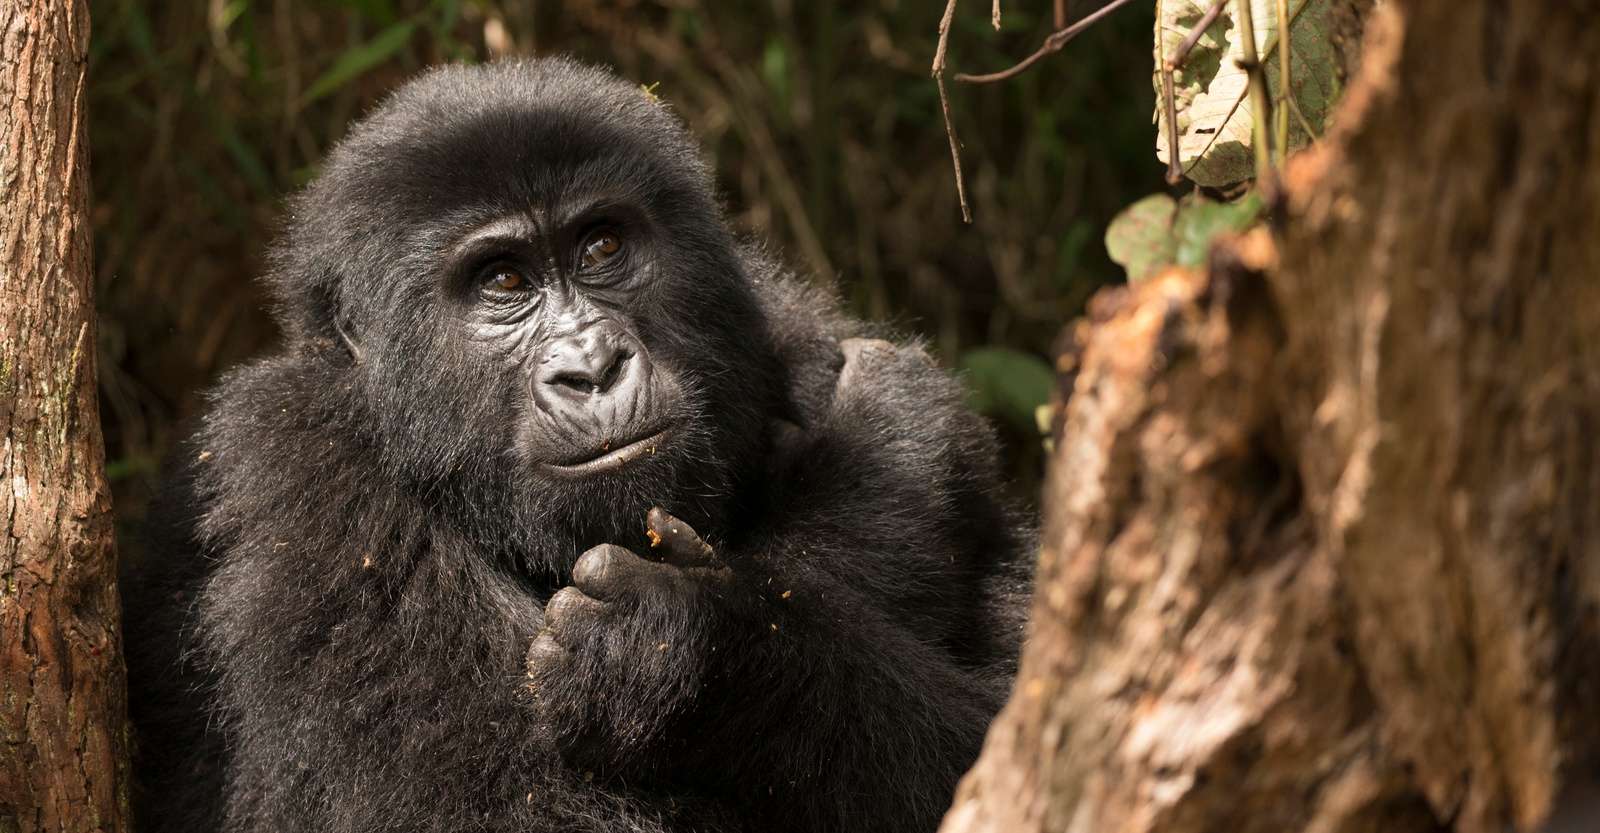 Mountain gorilla, Bwindi Impenetrable National Park, Uganda.